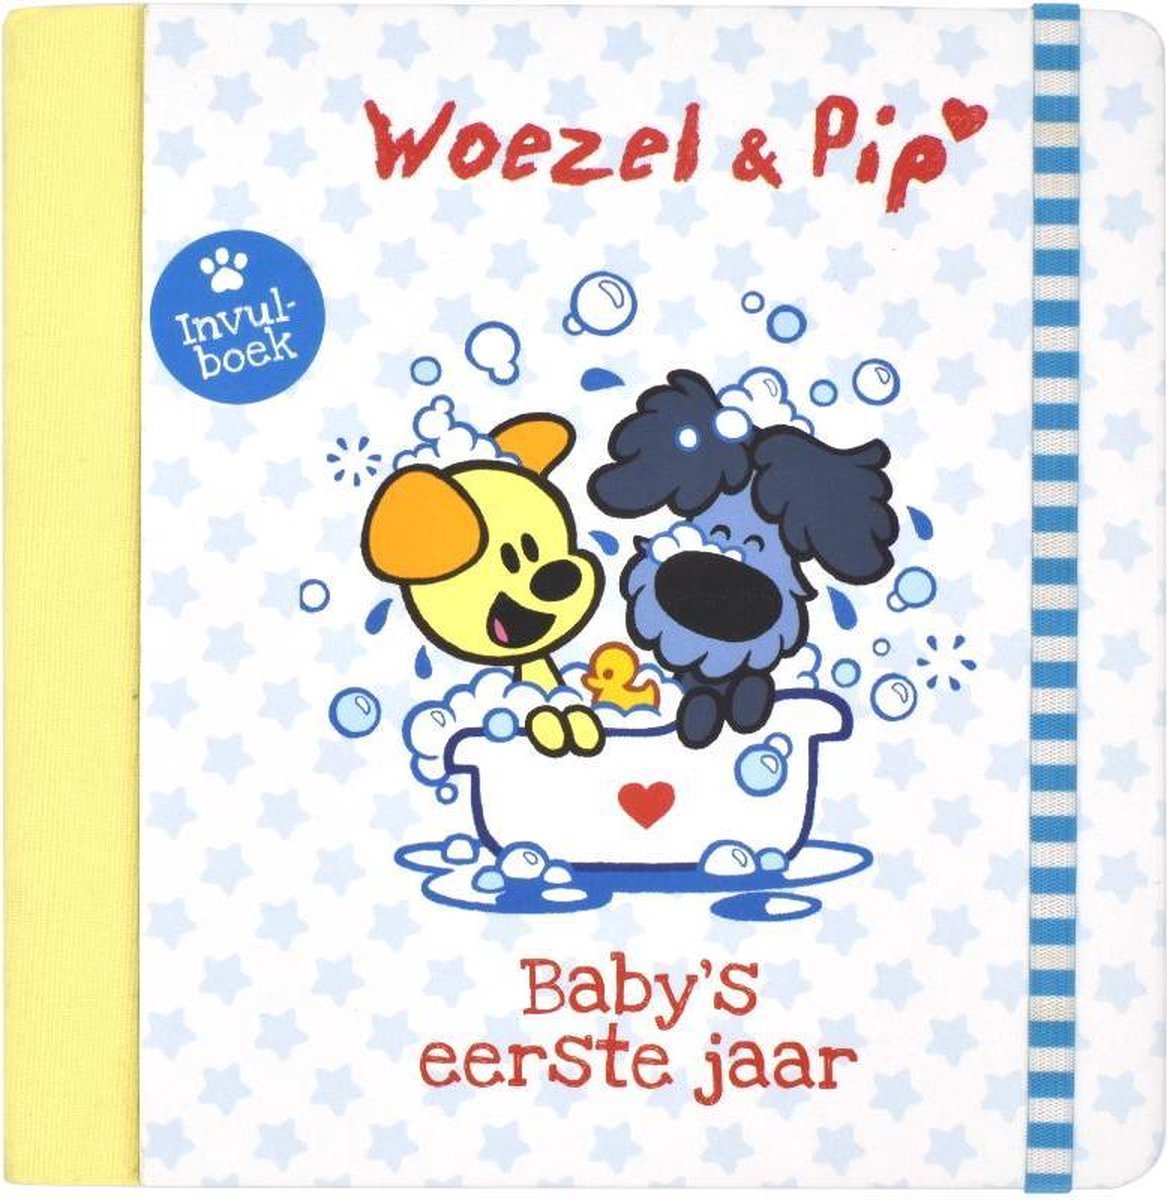 Woezel & Pip 3 - Baby's eerste jaar, Guusje Nederhorst | 9789461445056 |  Boeken | bol.com